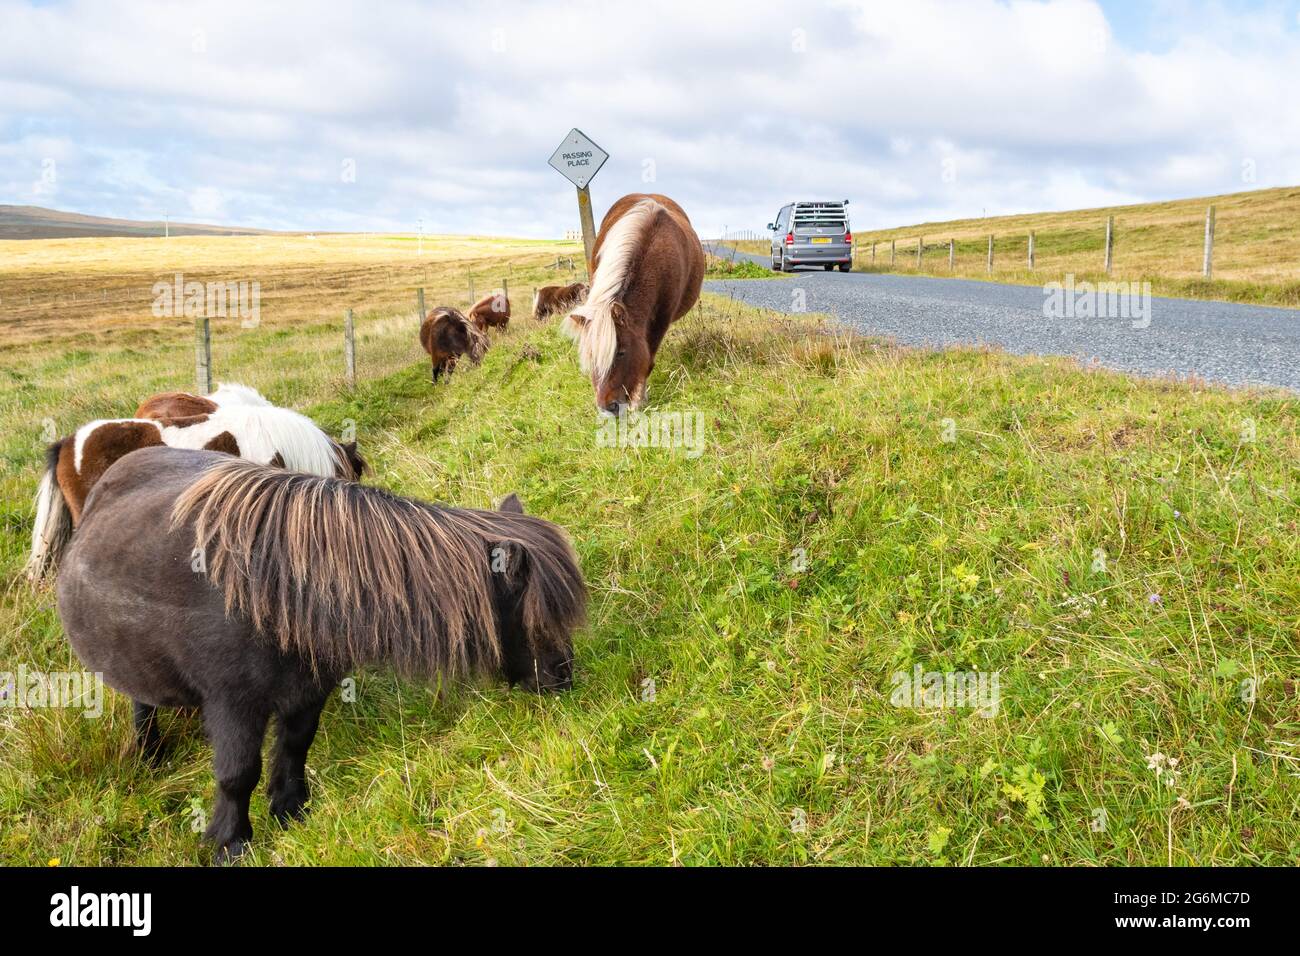 Shetland ponies à côté de la route et campervan sur Shetland Islands Road trip - Unst, Shetland Islands, Écosse, Royaume-Uni Banque D'Images